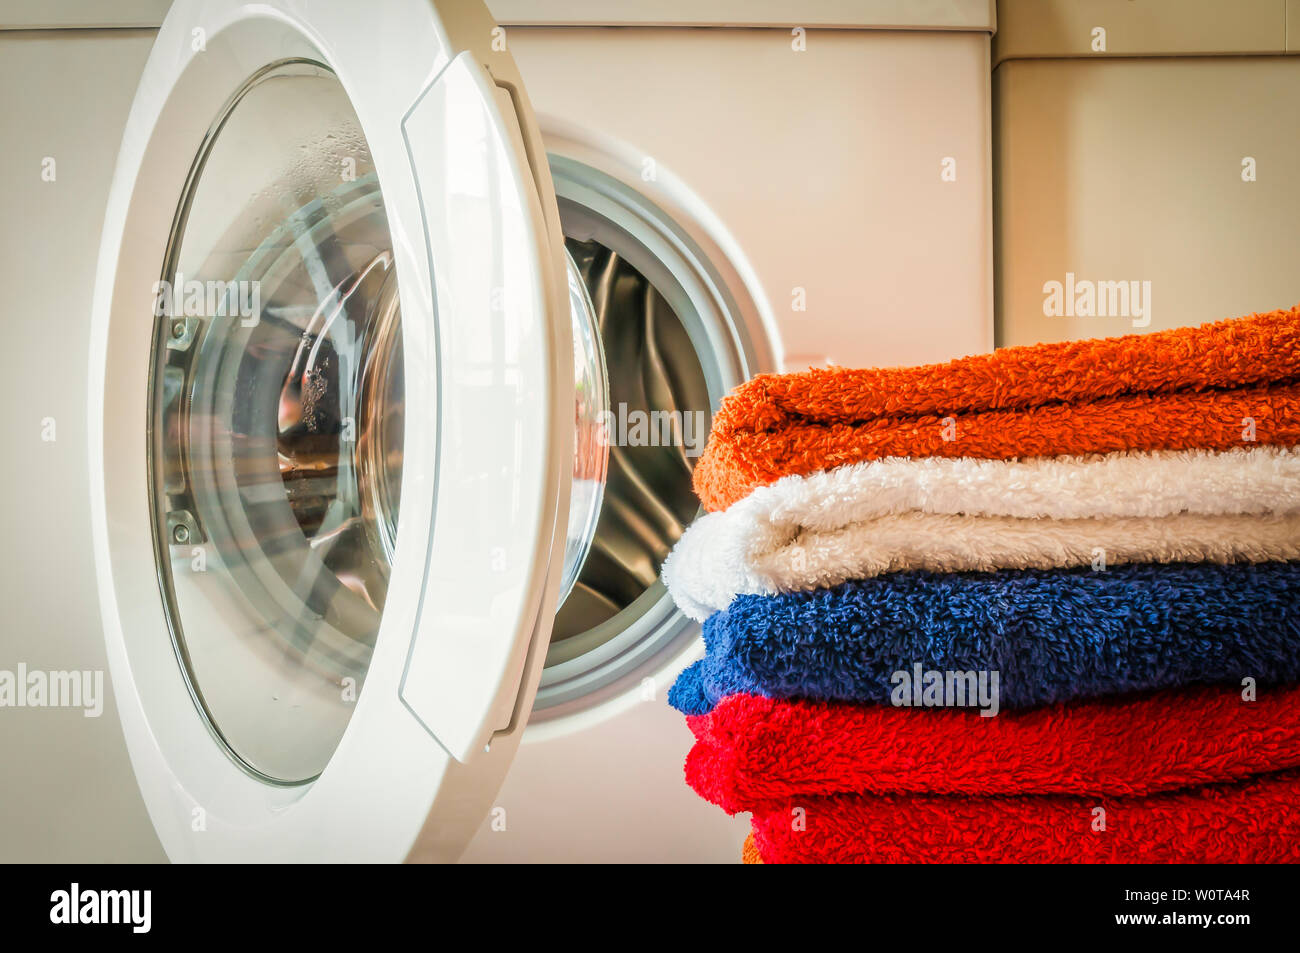 Waschservice, Hausarbeit, Waschmaschine und ein Stapel bunter Handtuecher. Stock Photo